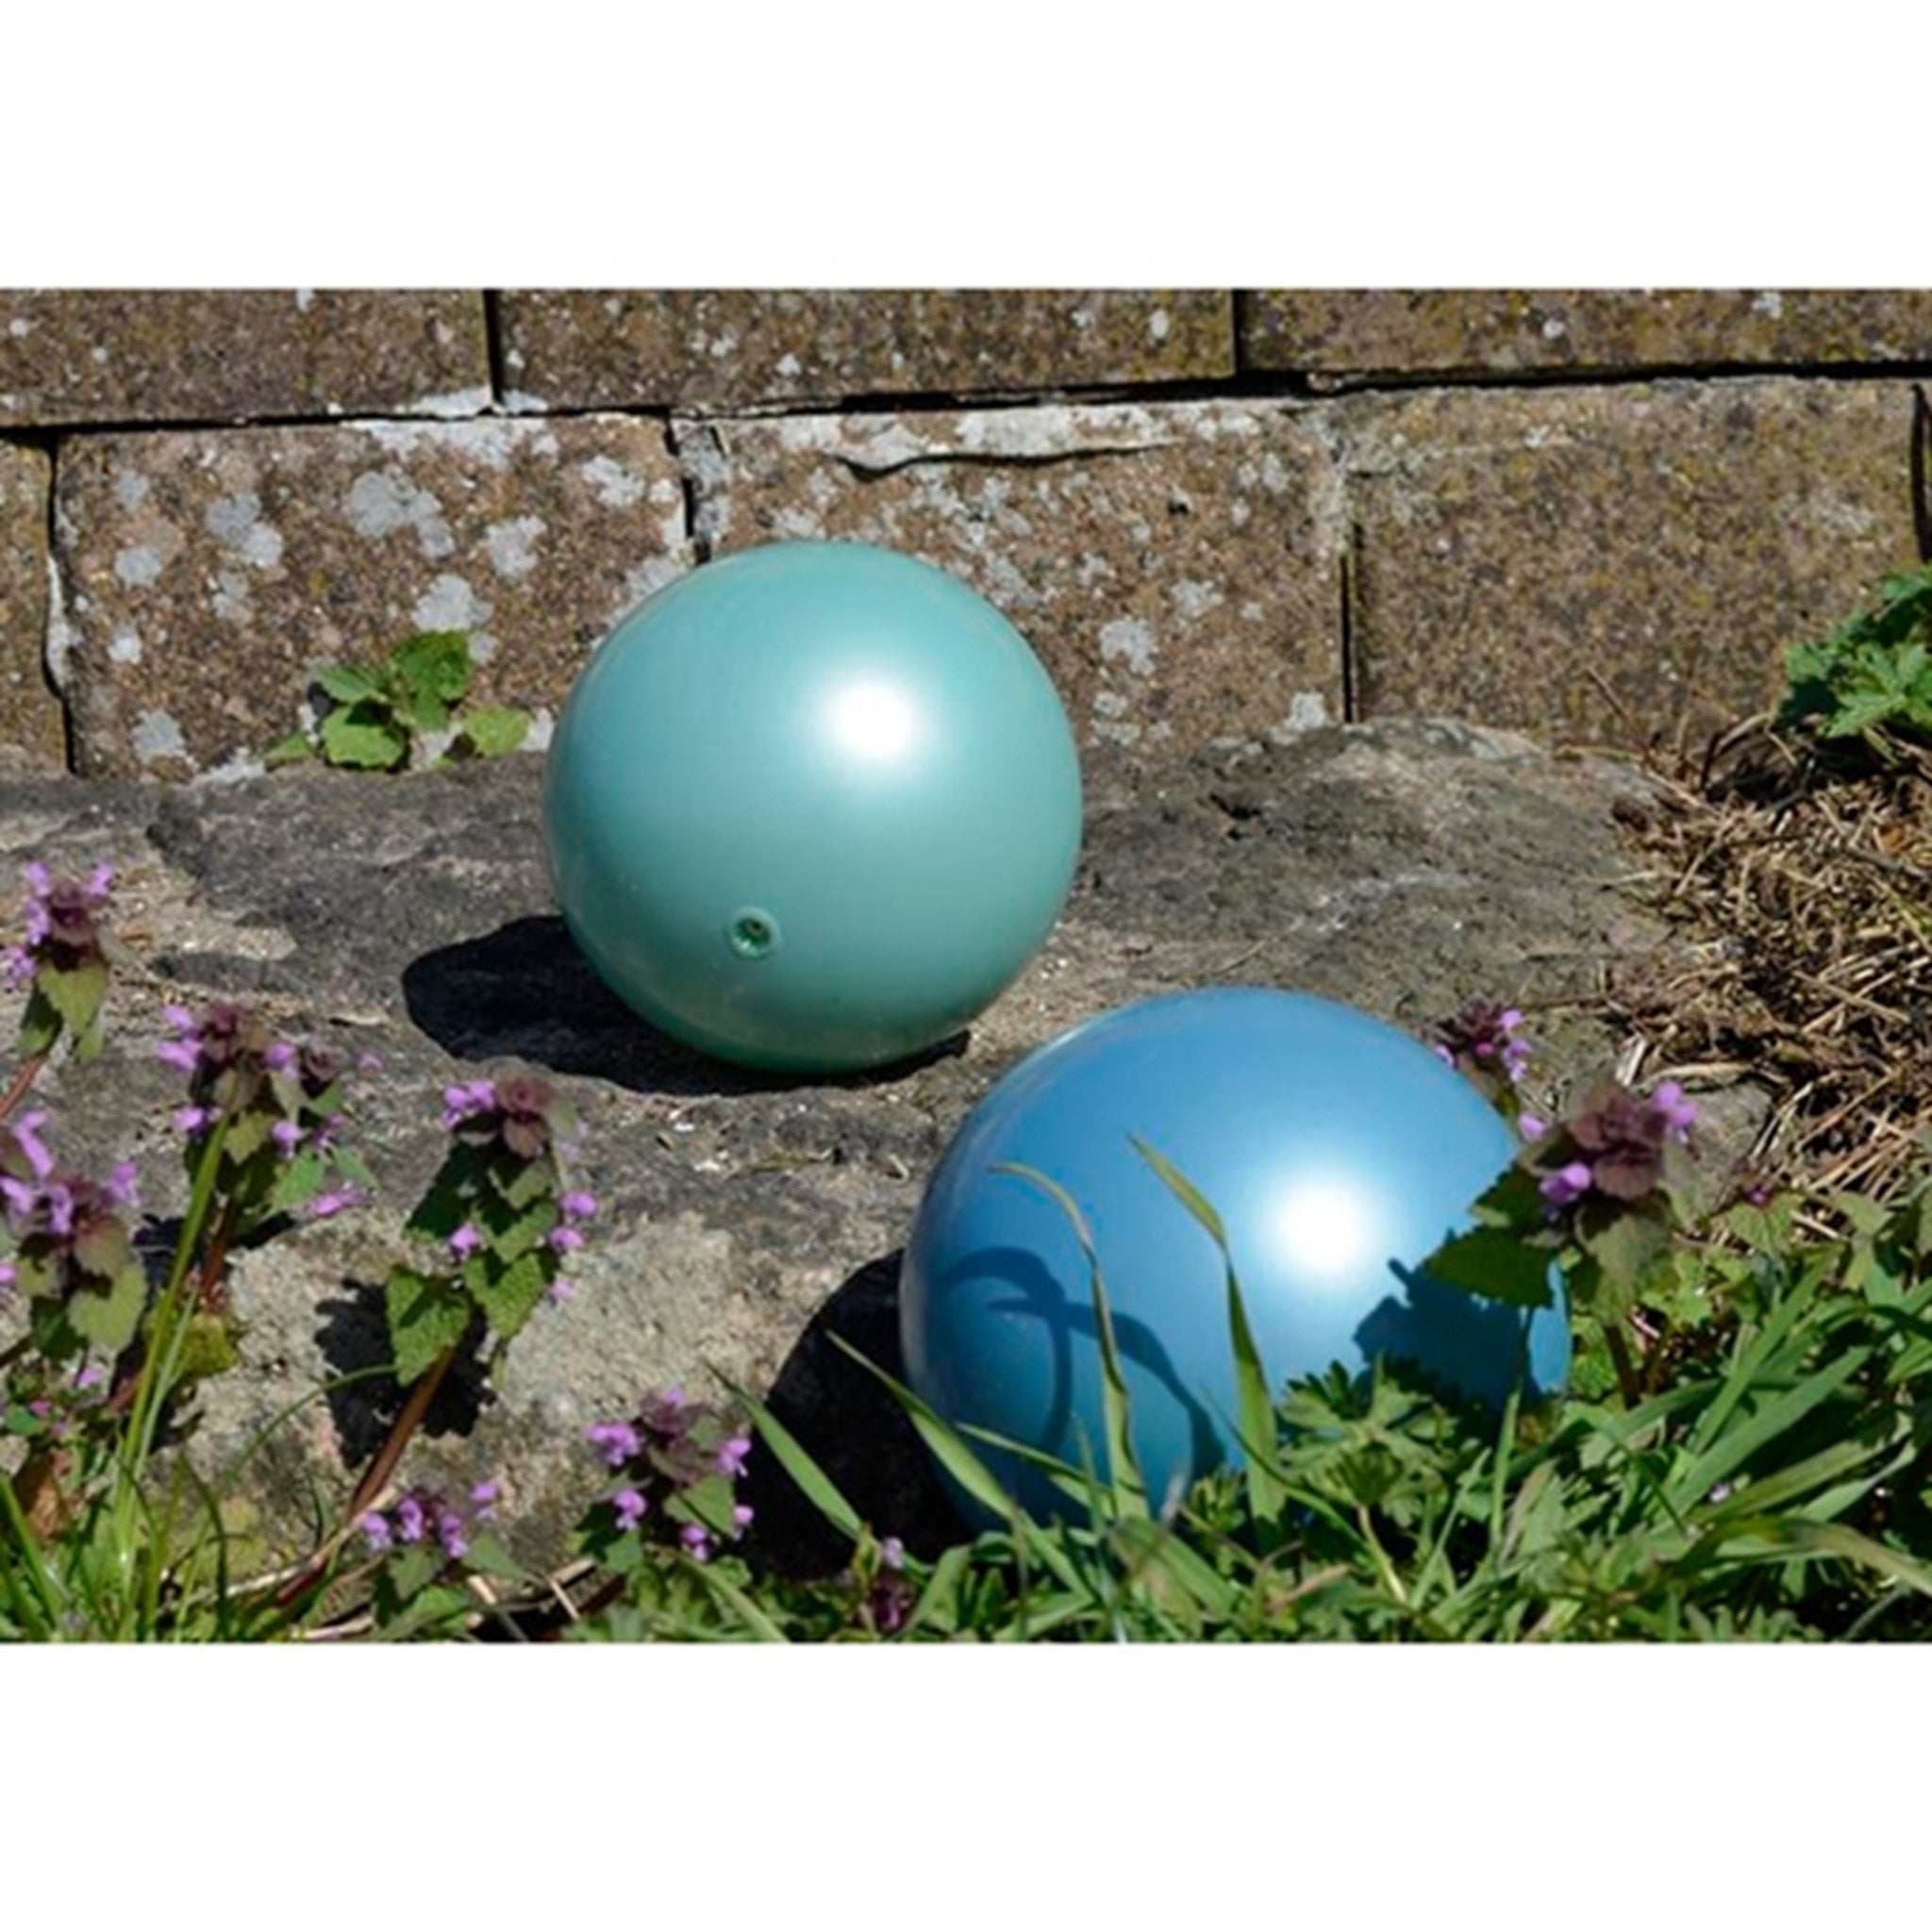 Magni Balls Green/Blue 2